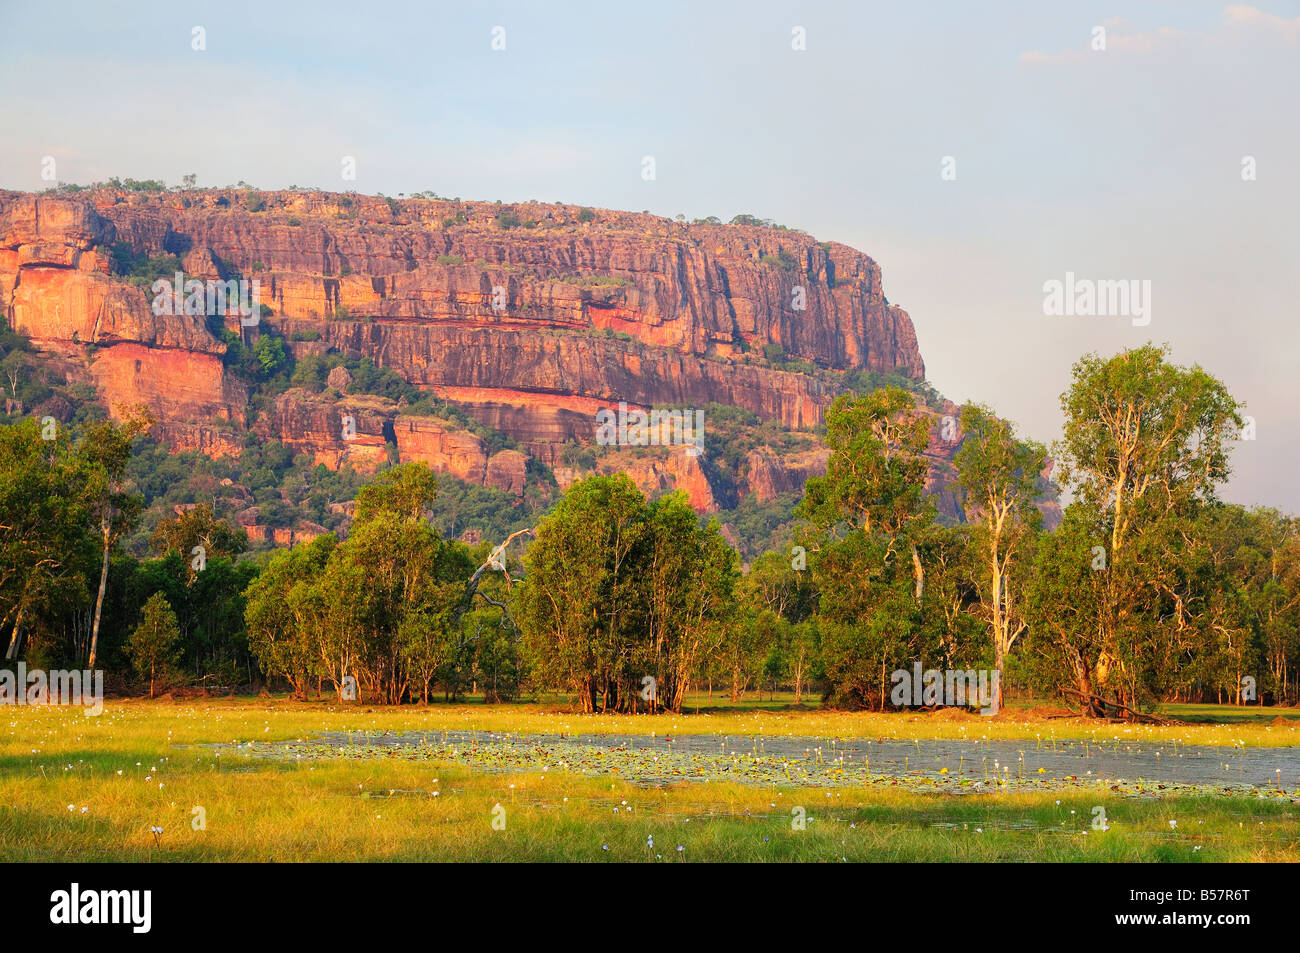 Nourlangie Rock e Anbangbang Billabong, Parco Nazionale Kakadu, Sito Patrimonio Mondiale dell'UNESCO, il Territorio del Nord, l'Australia Foto Stock